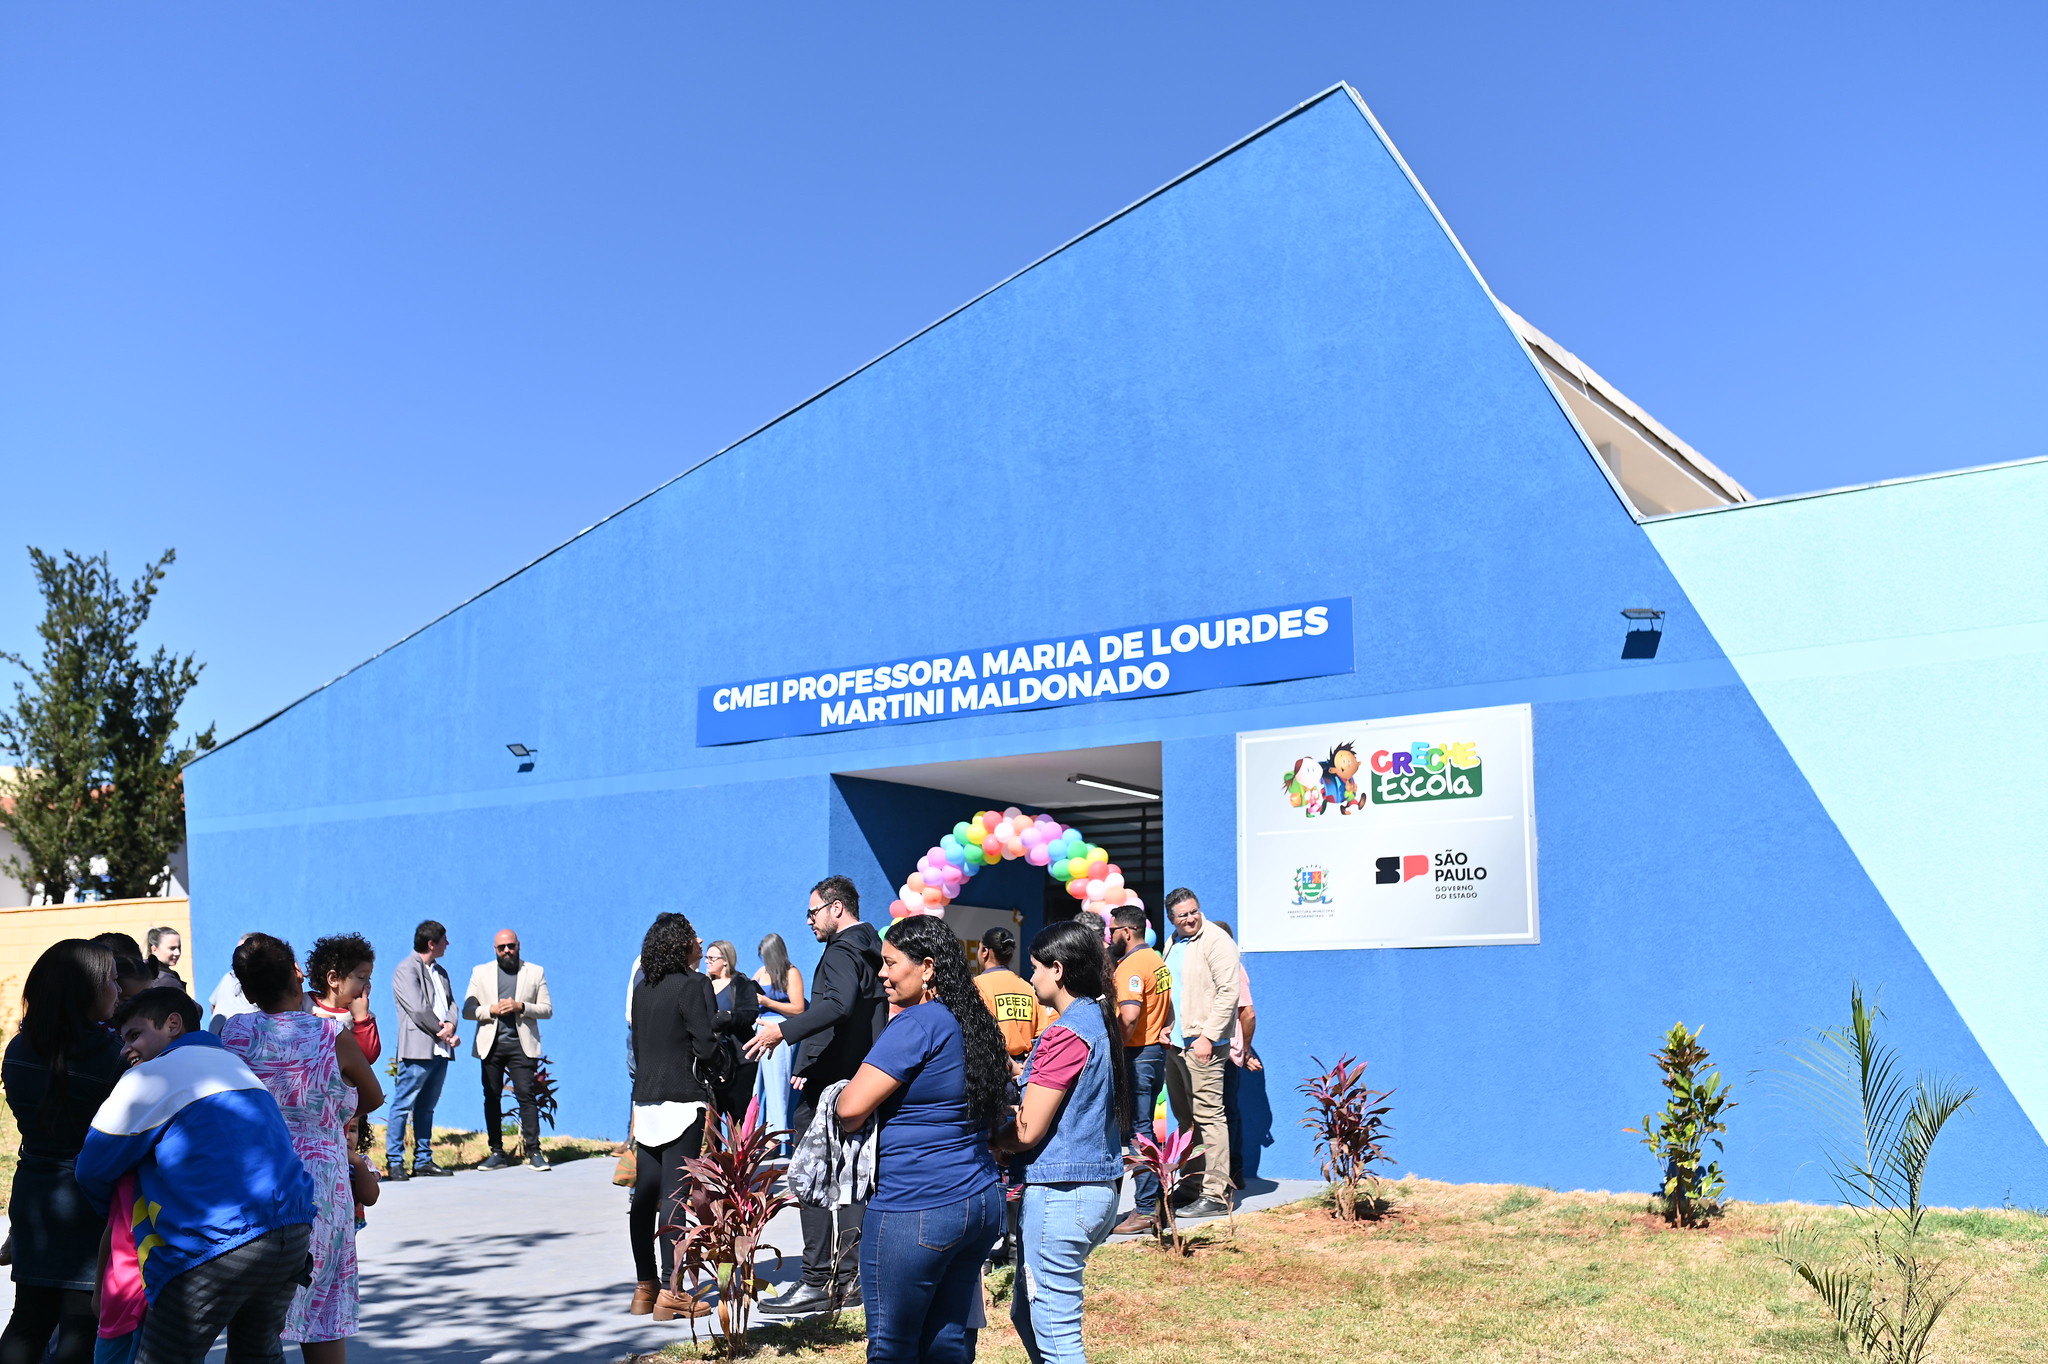 Centro Municipal de Educação Infantil Professora Maria de Lourdes Martini Maldonado “Dona Lurdinha” tem capacidade para atender 130 alunos da primeira infância